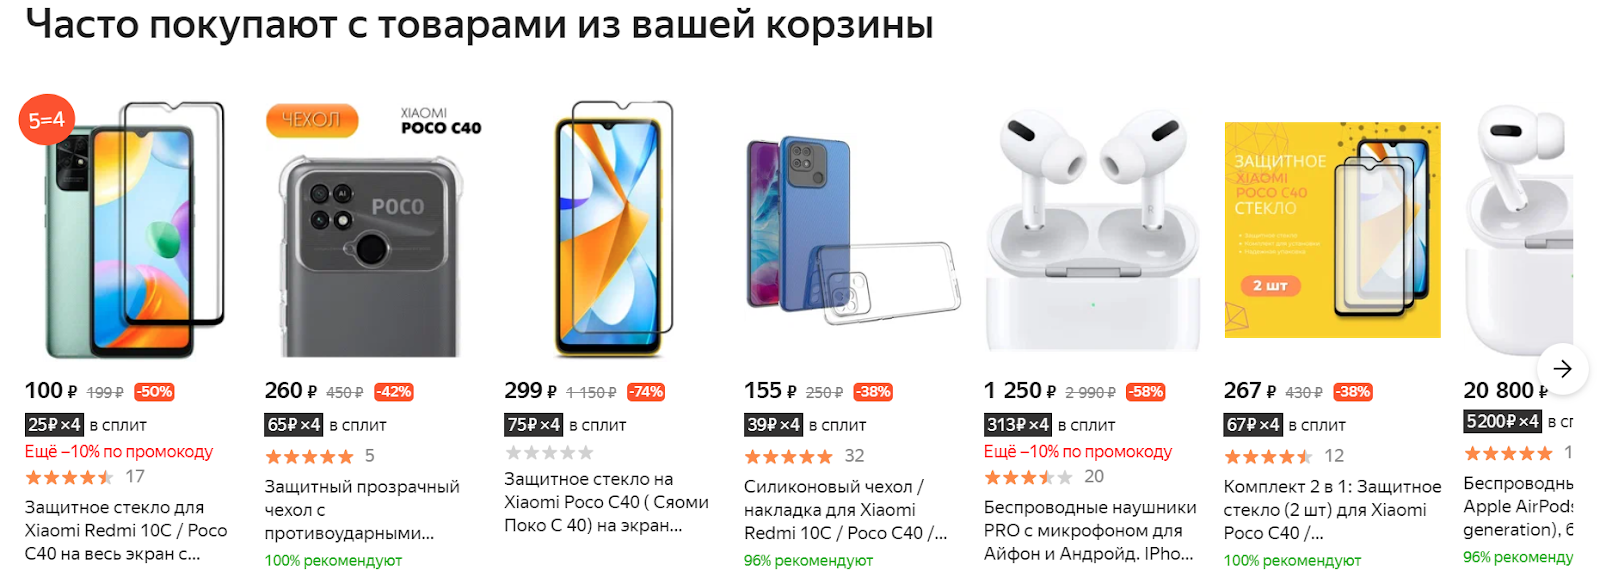 Часто покупают с товарами из вашей корзины в Яндекс.Маркет